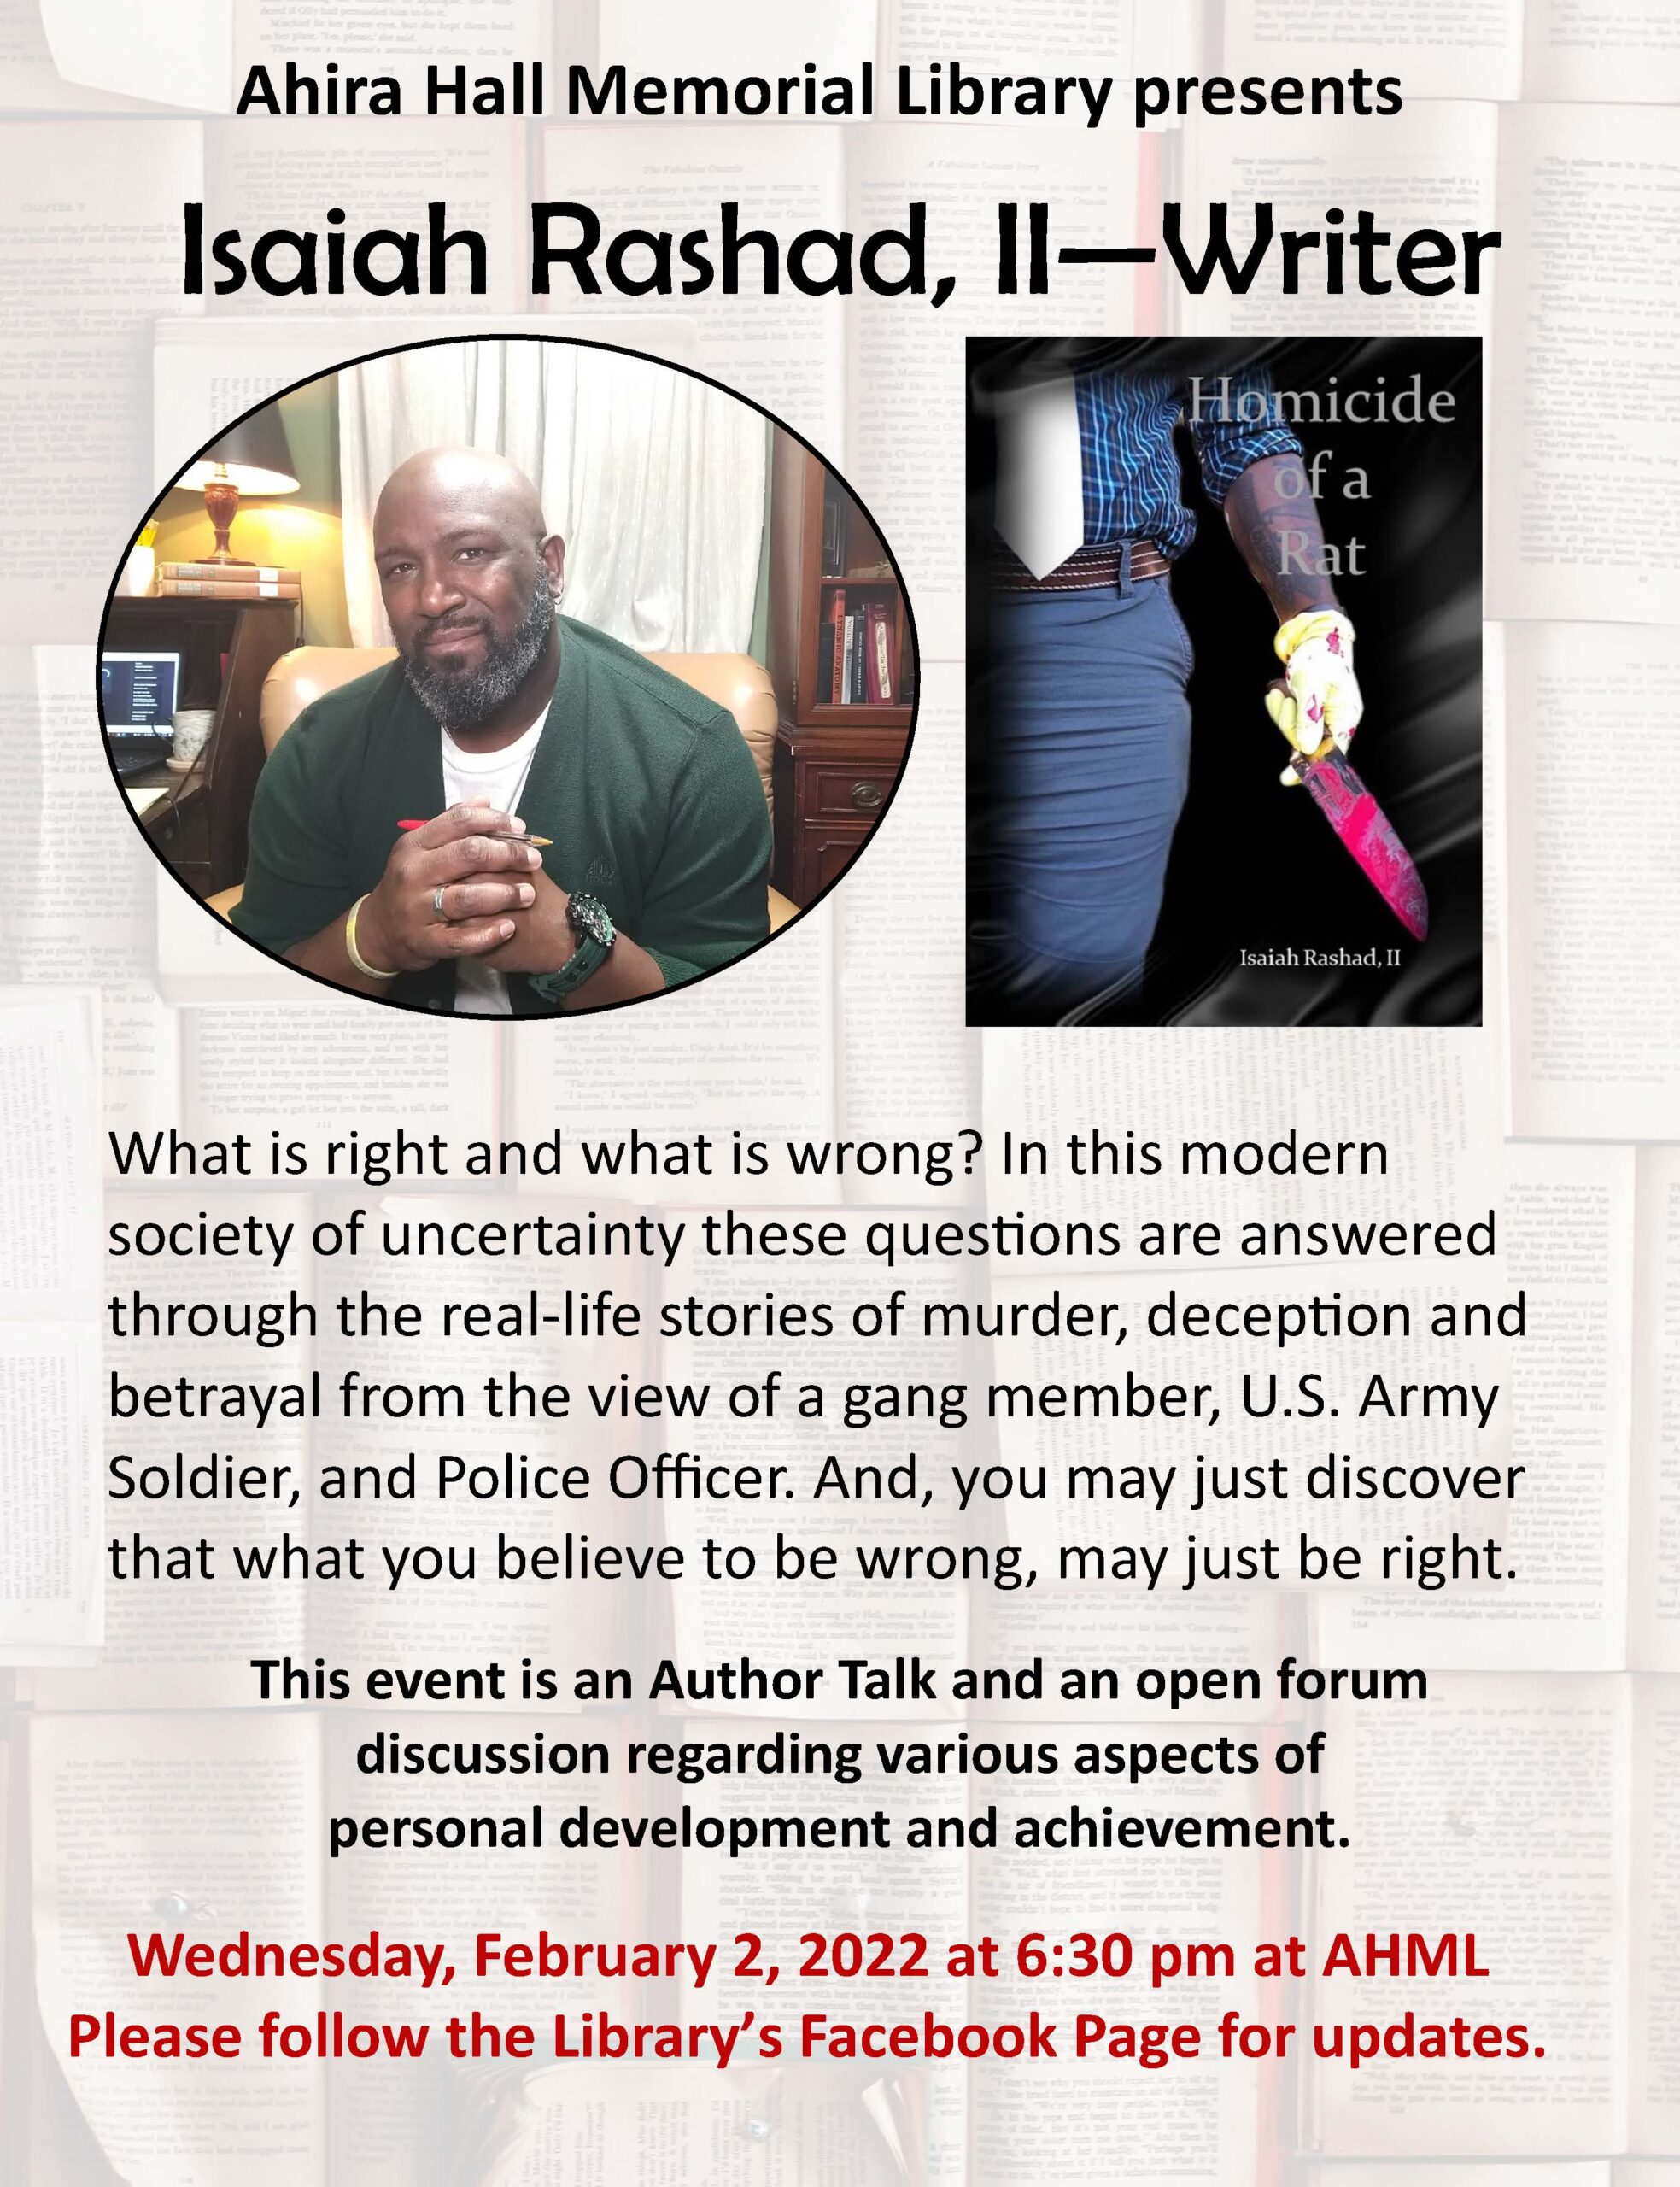 Isaiah Rashad, II - Author Talk